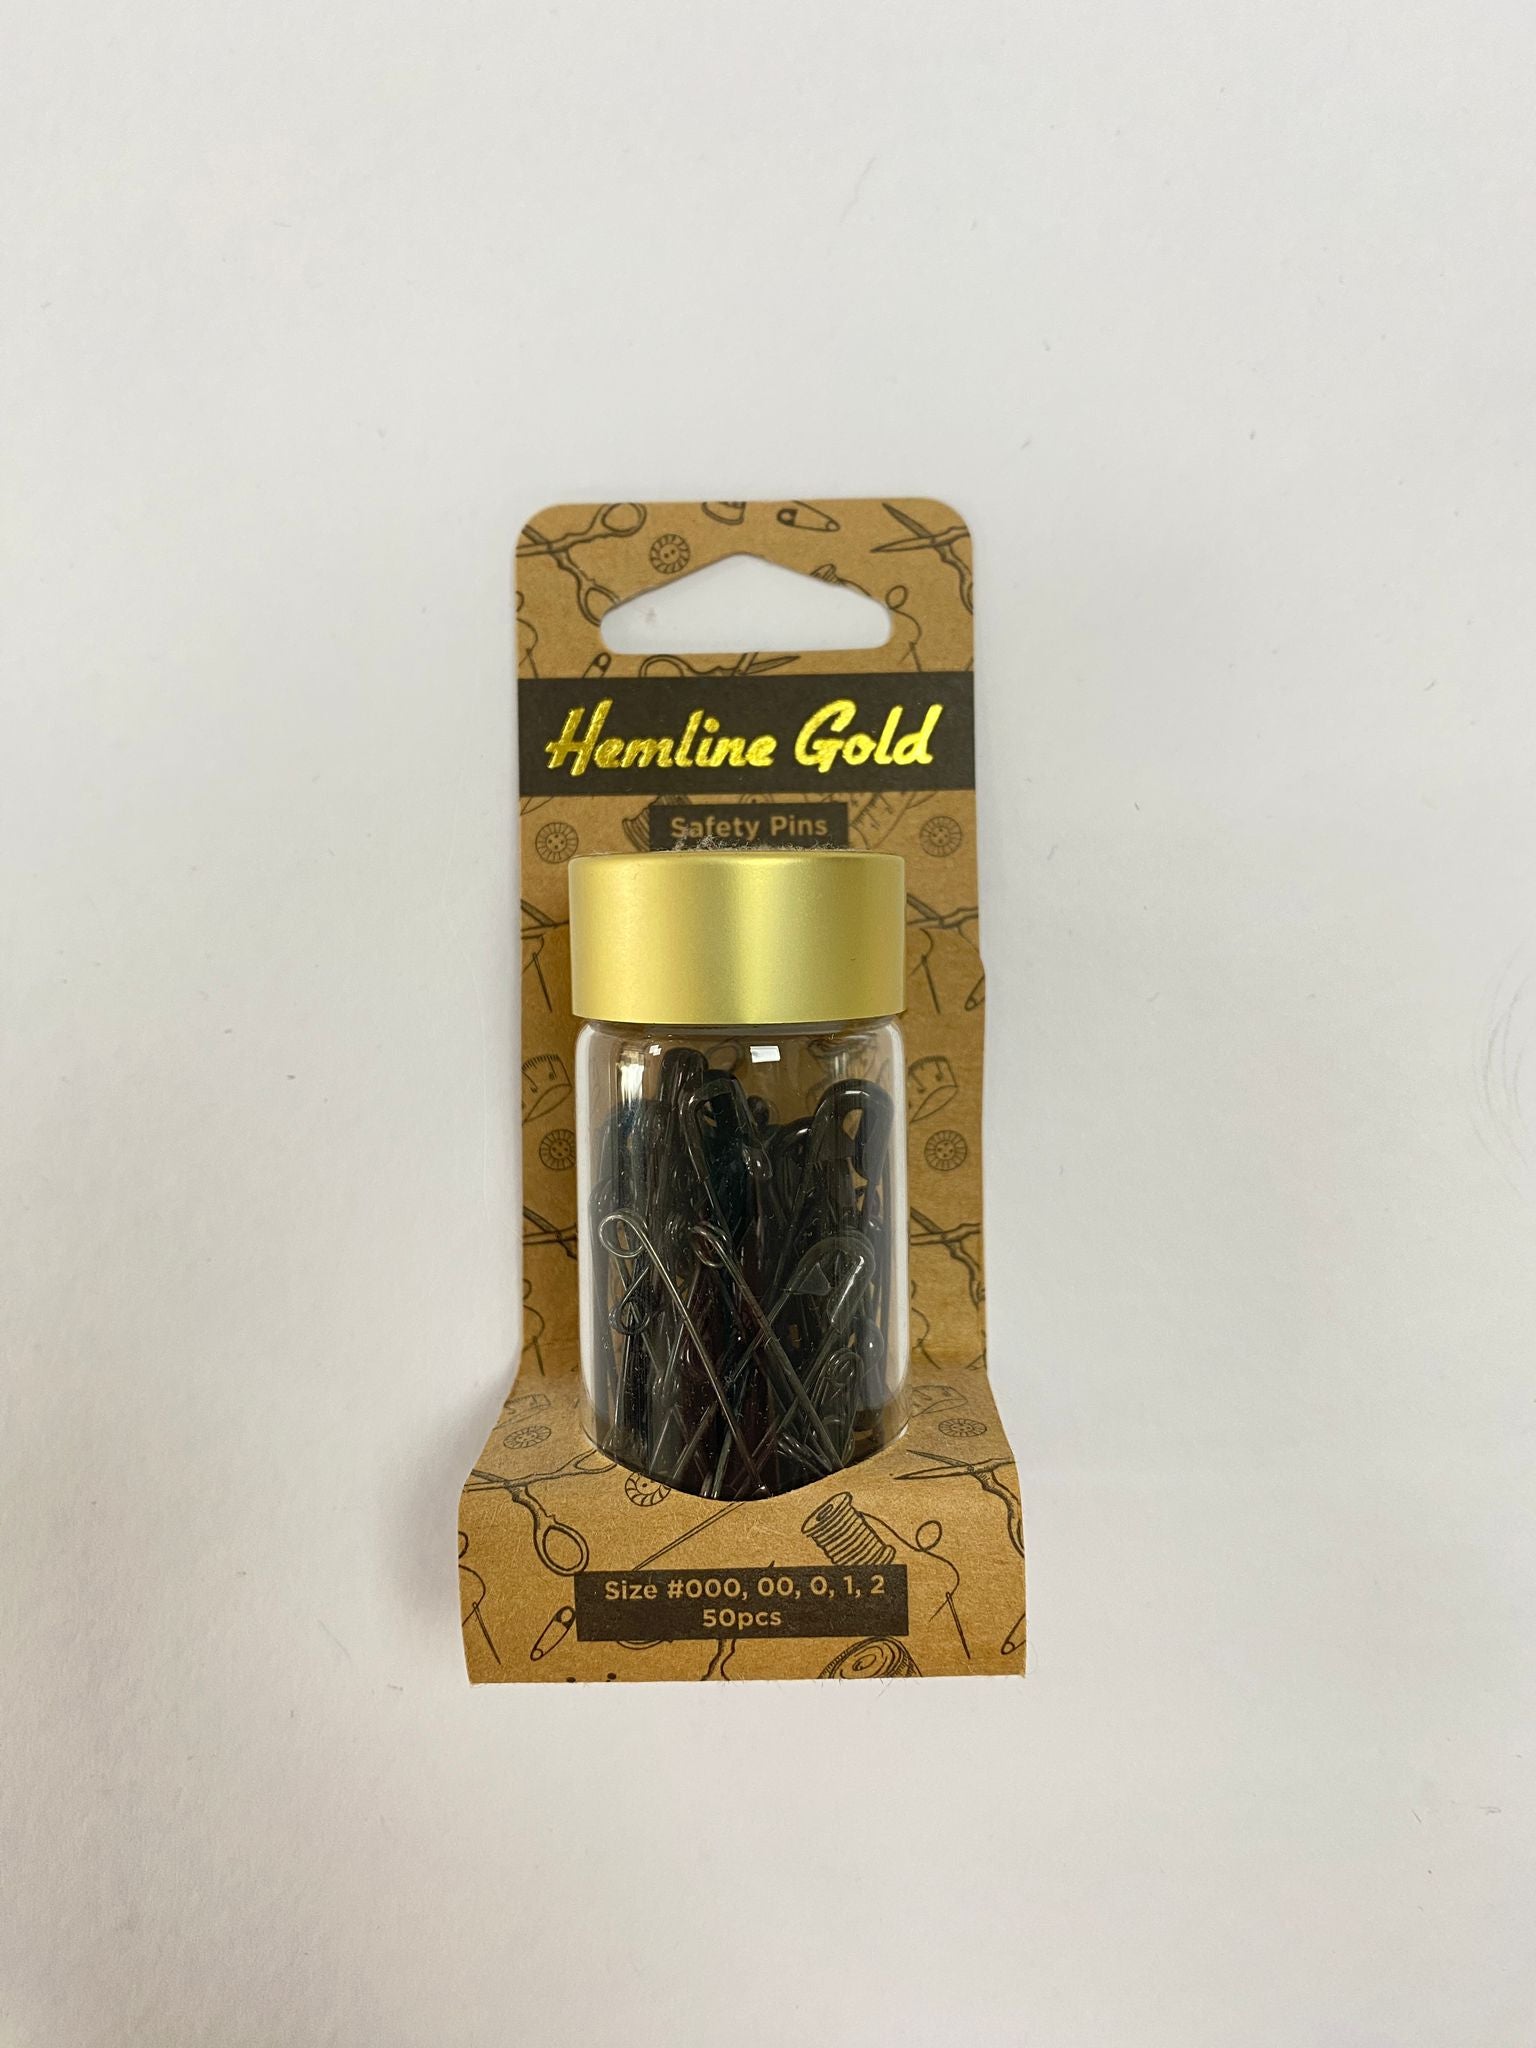 Hemline Gold Safety Pins